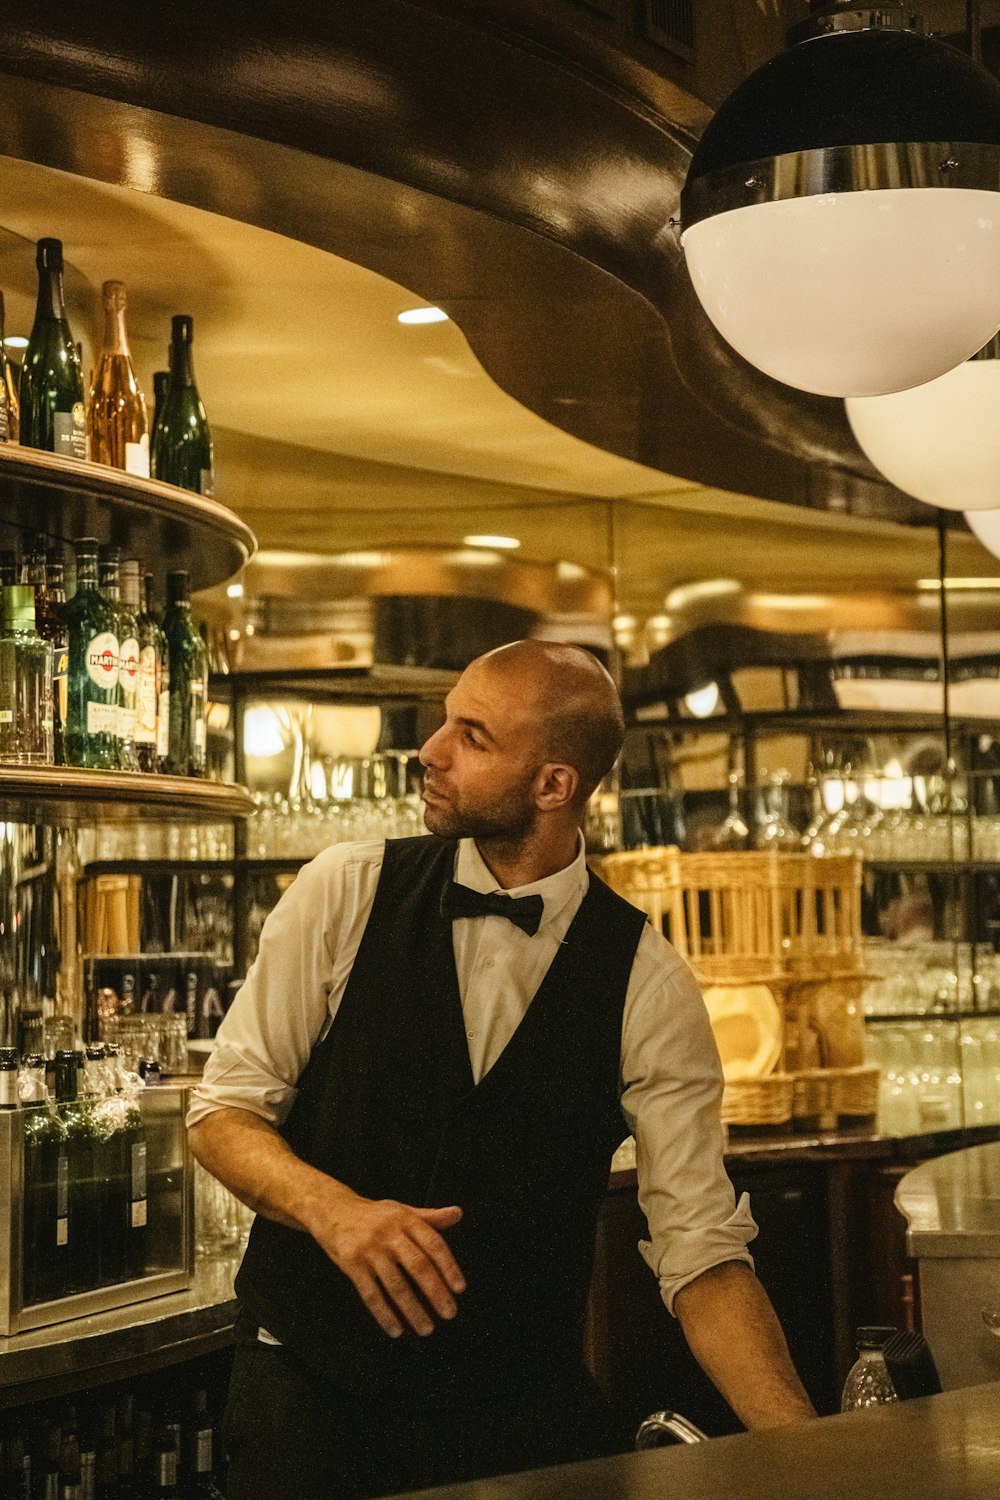 Un hombre con una pajarita parado frente a un bar